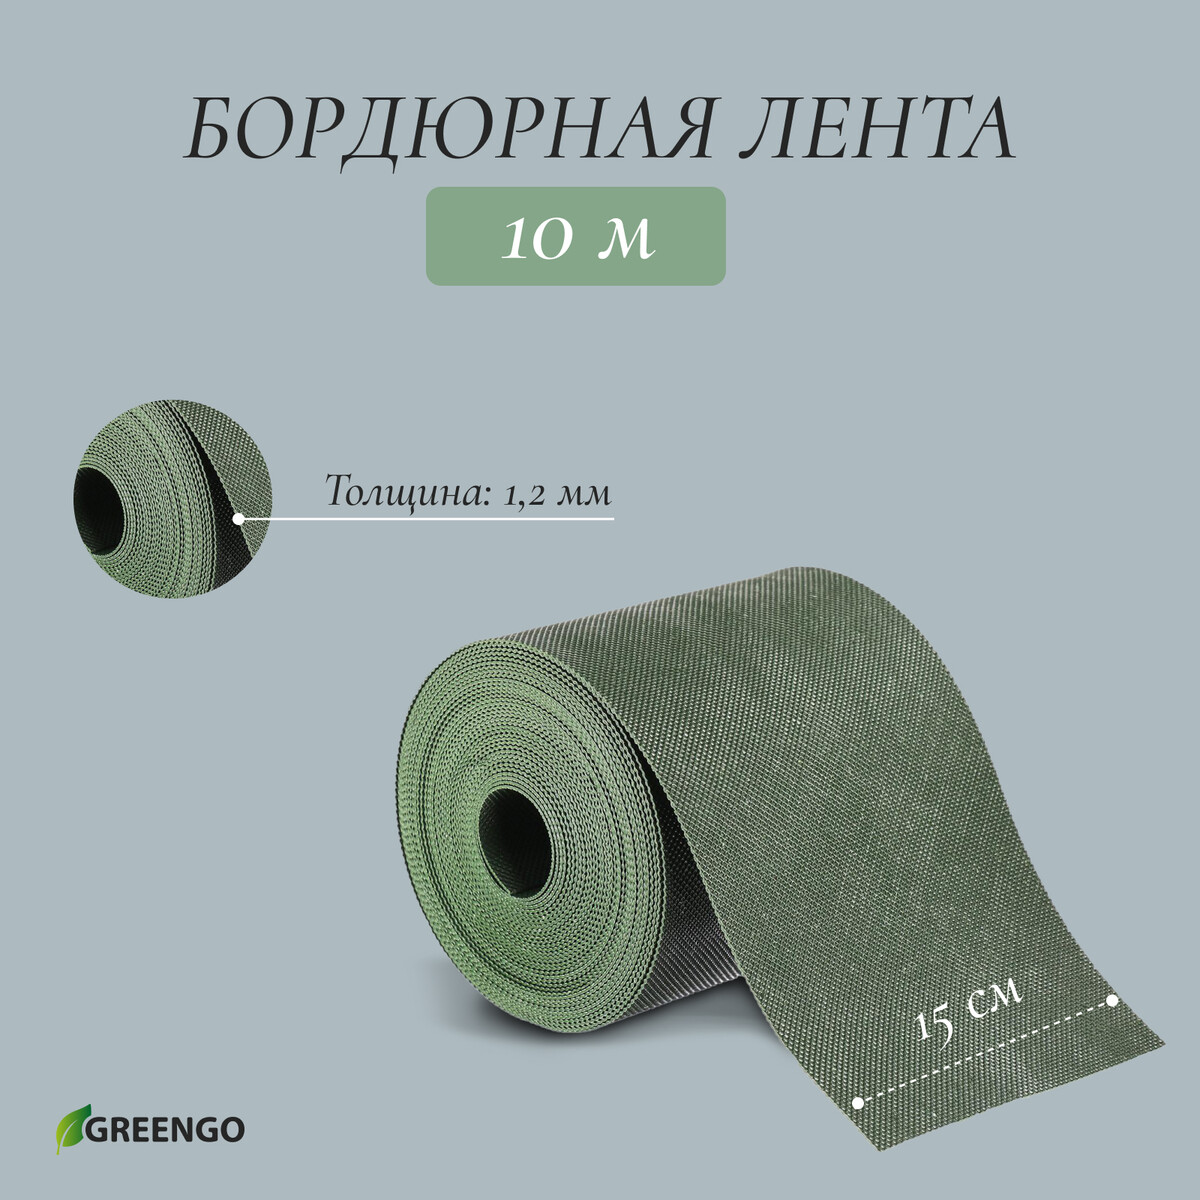 Лента бордюрная, 0.15 × 10 м, толщина 1.2 мм, пластиковая, зеленая, greengo